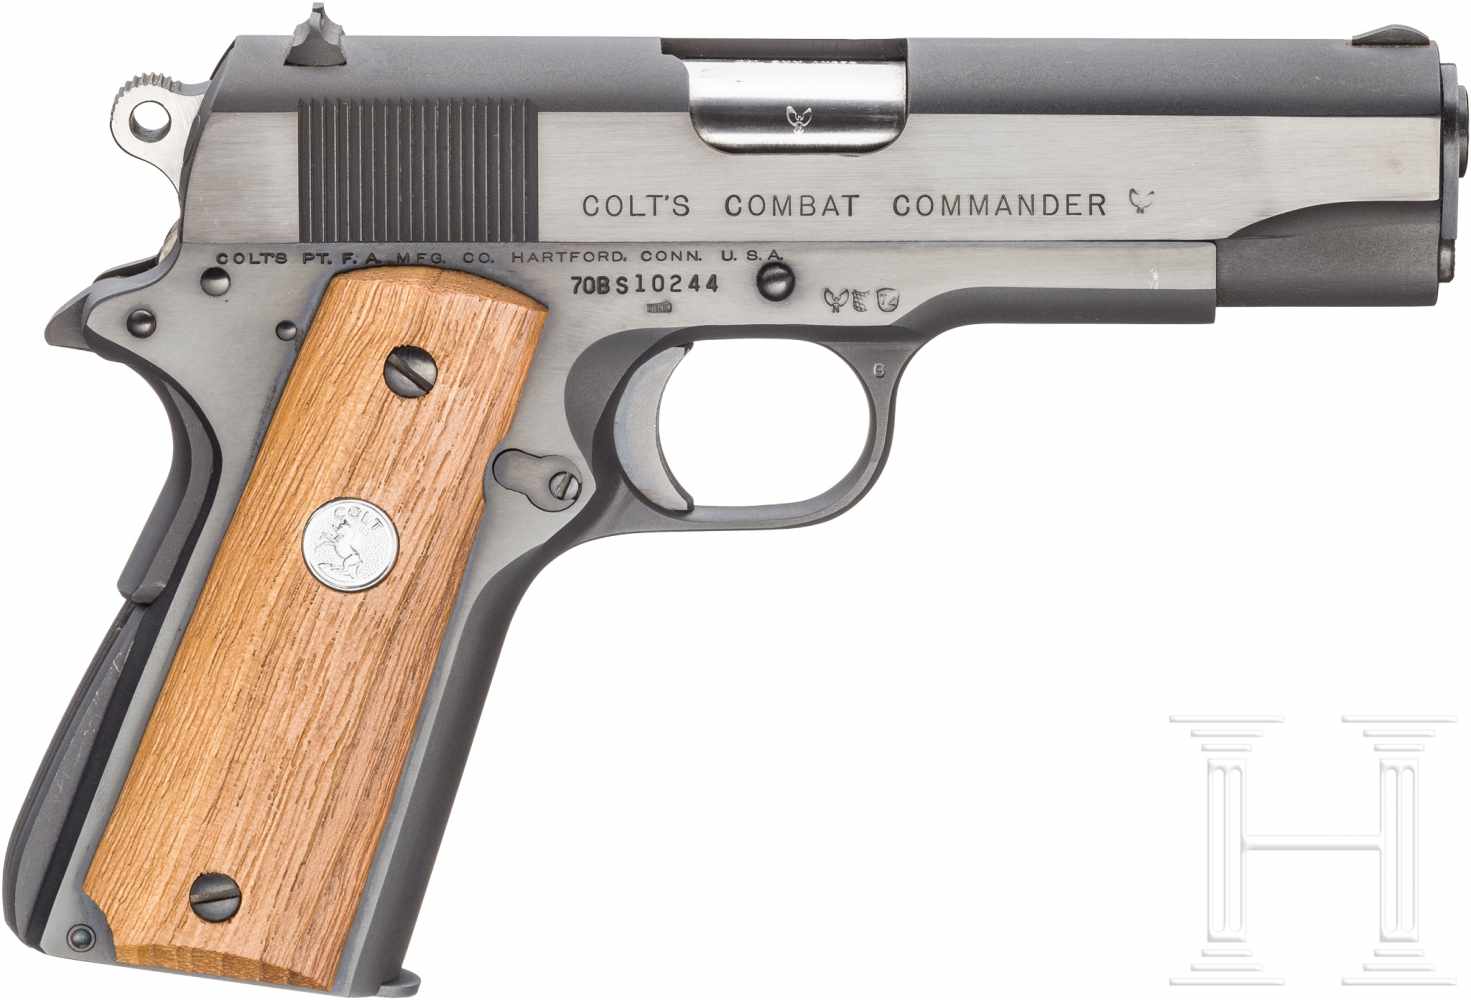 Colt Combat Commander, im KartonKal. 9 mm Luger, Nr. 70BS10244, Blanker Lauf, Länge 4-1/4". - Image 2 of 2